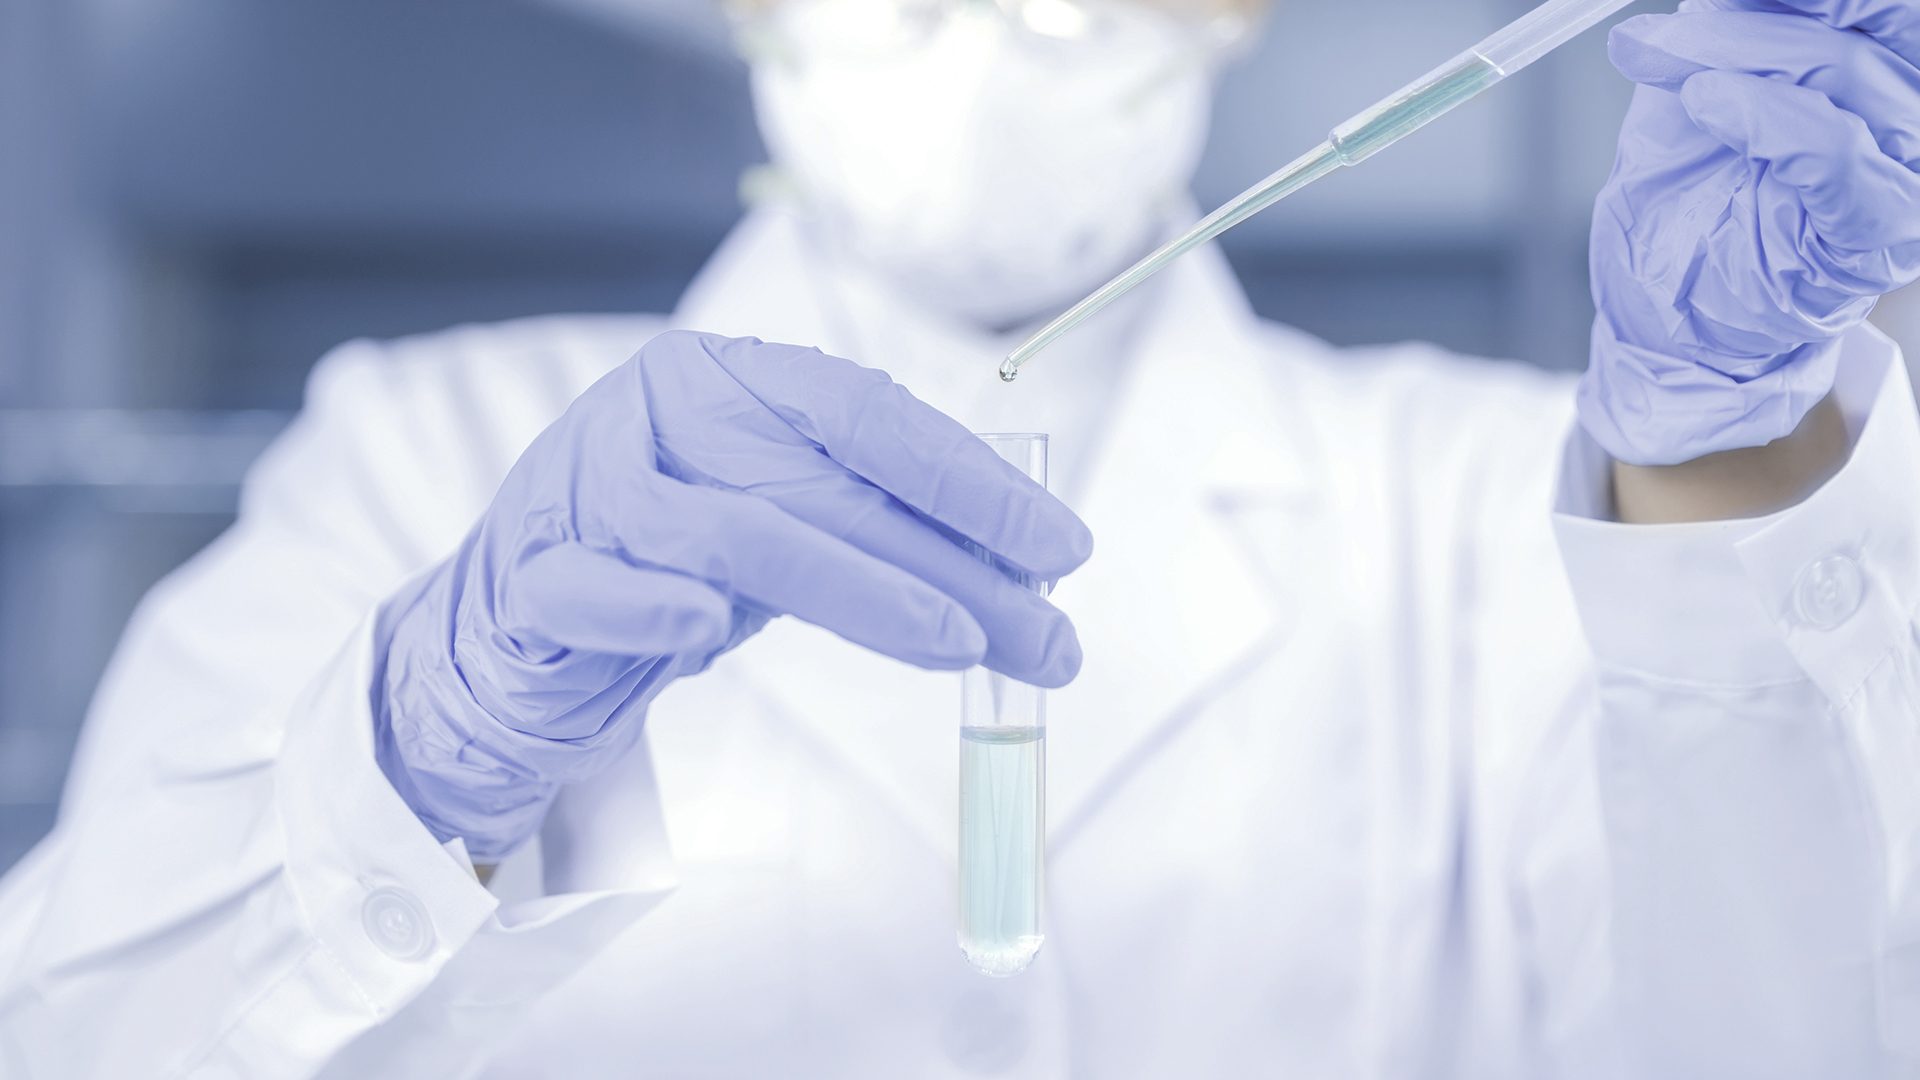 Forsker der dypper væske i et reagensglas.